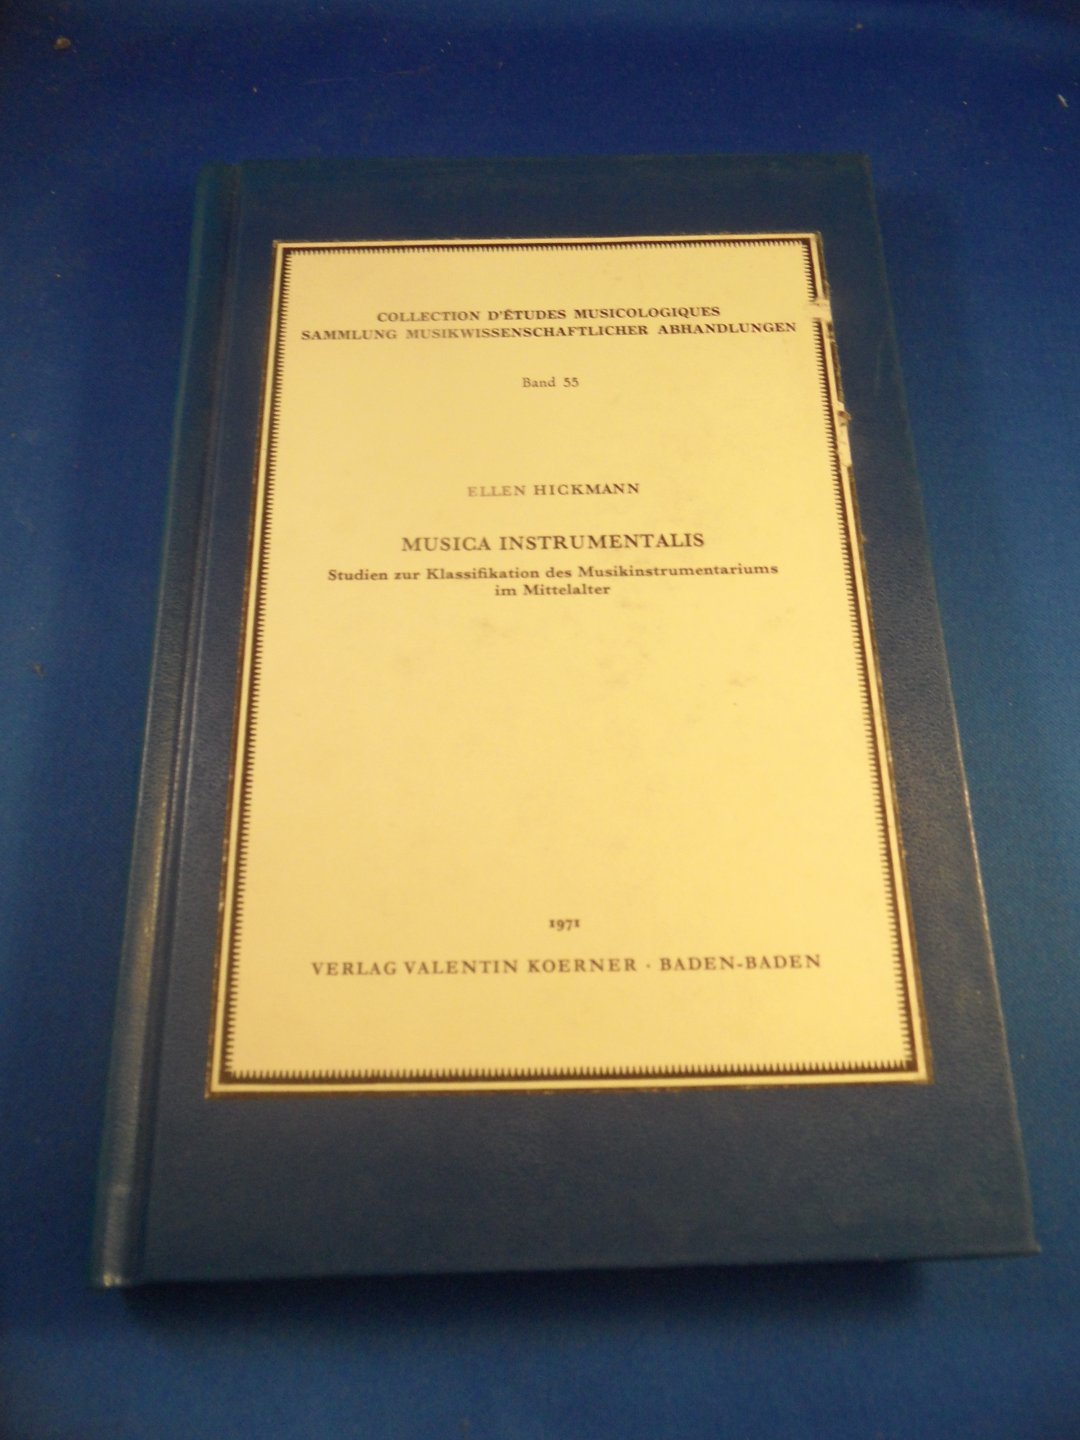 Hickmann, Ellen - Musica Instrumentalis, Studien zur Klassifikation des Musikinstrumentariums im Mittelalter